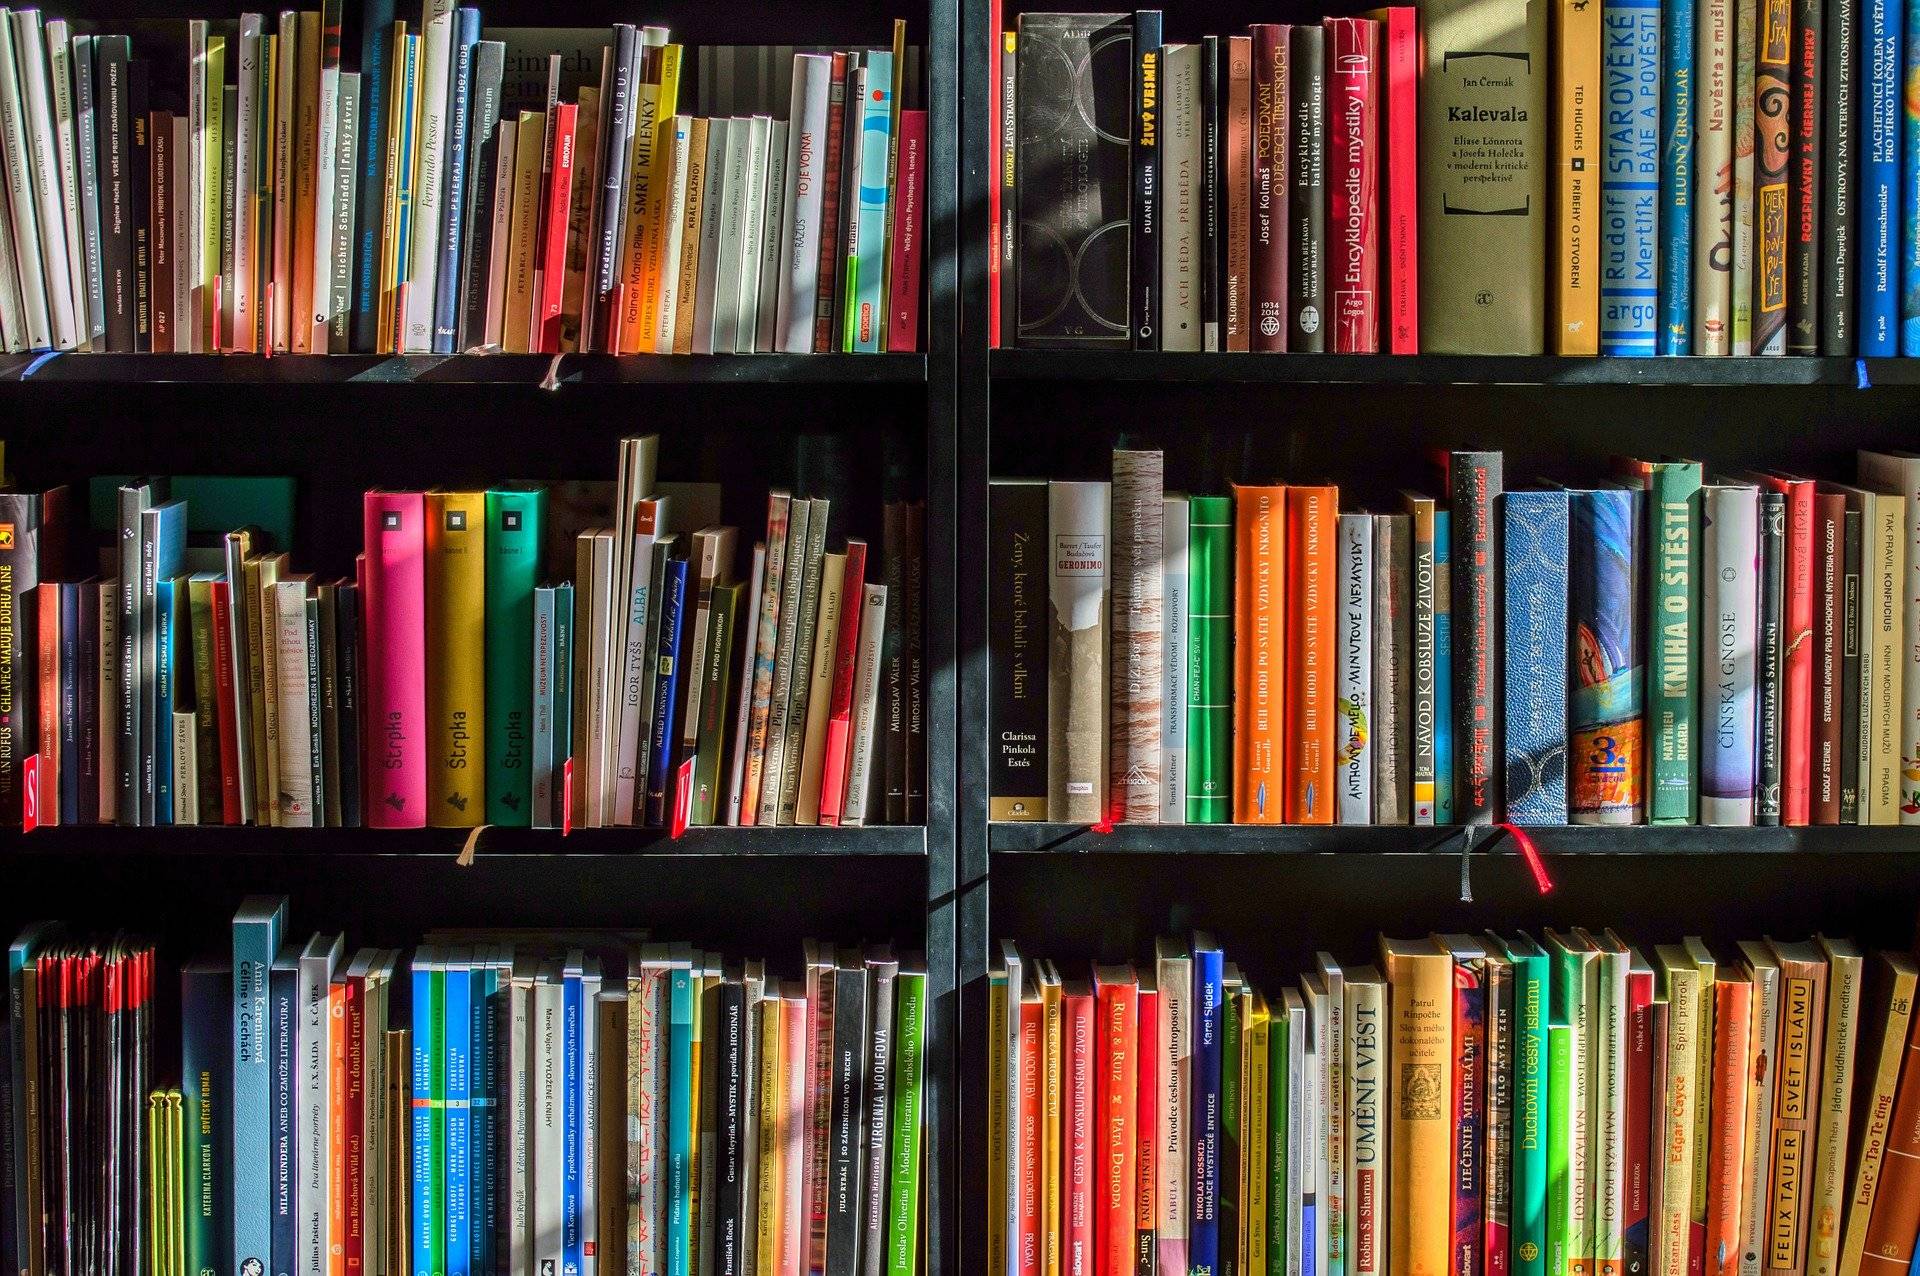 Leseweisung als neue pädagogische Möglichkeit: Mit Büchern Straftaten reflektieren